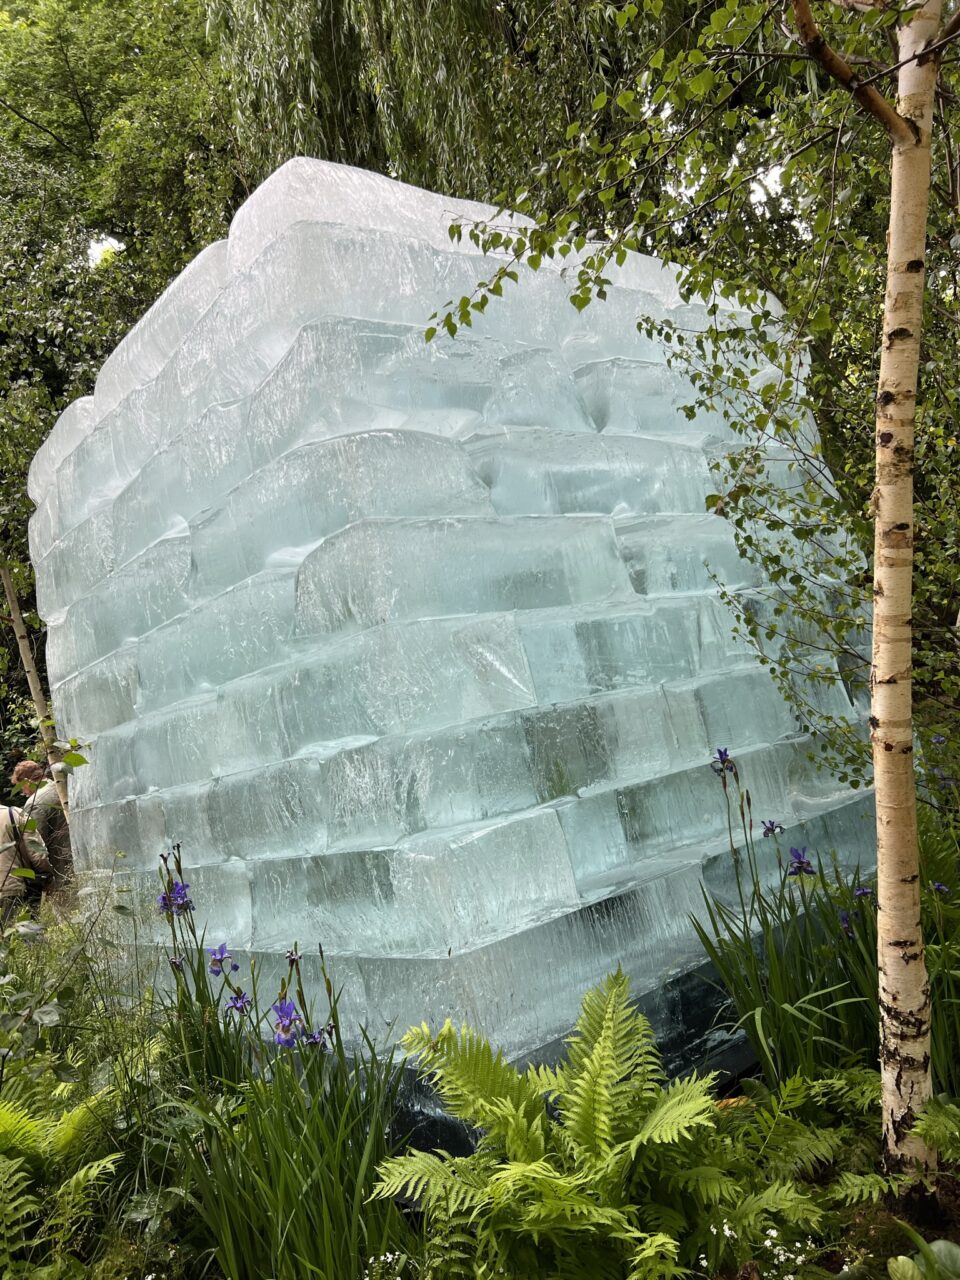 The Plantman's Ice Garden